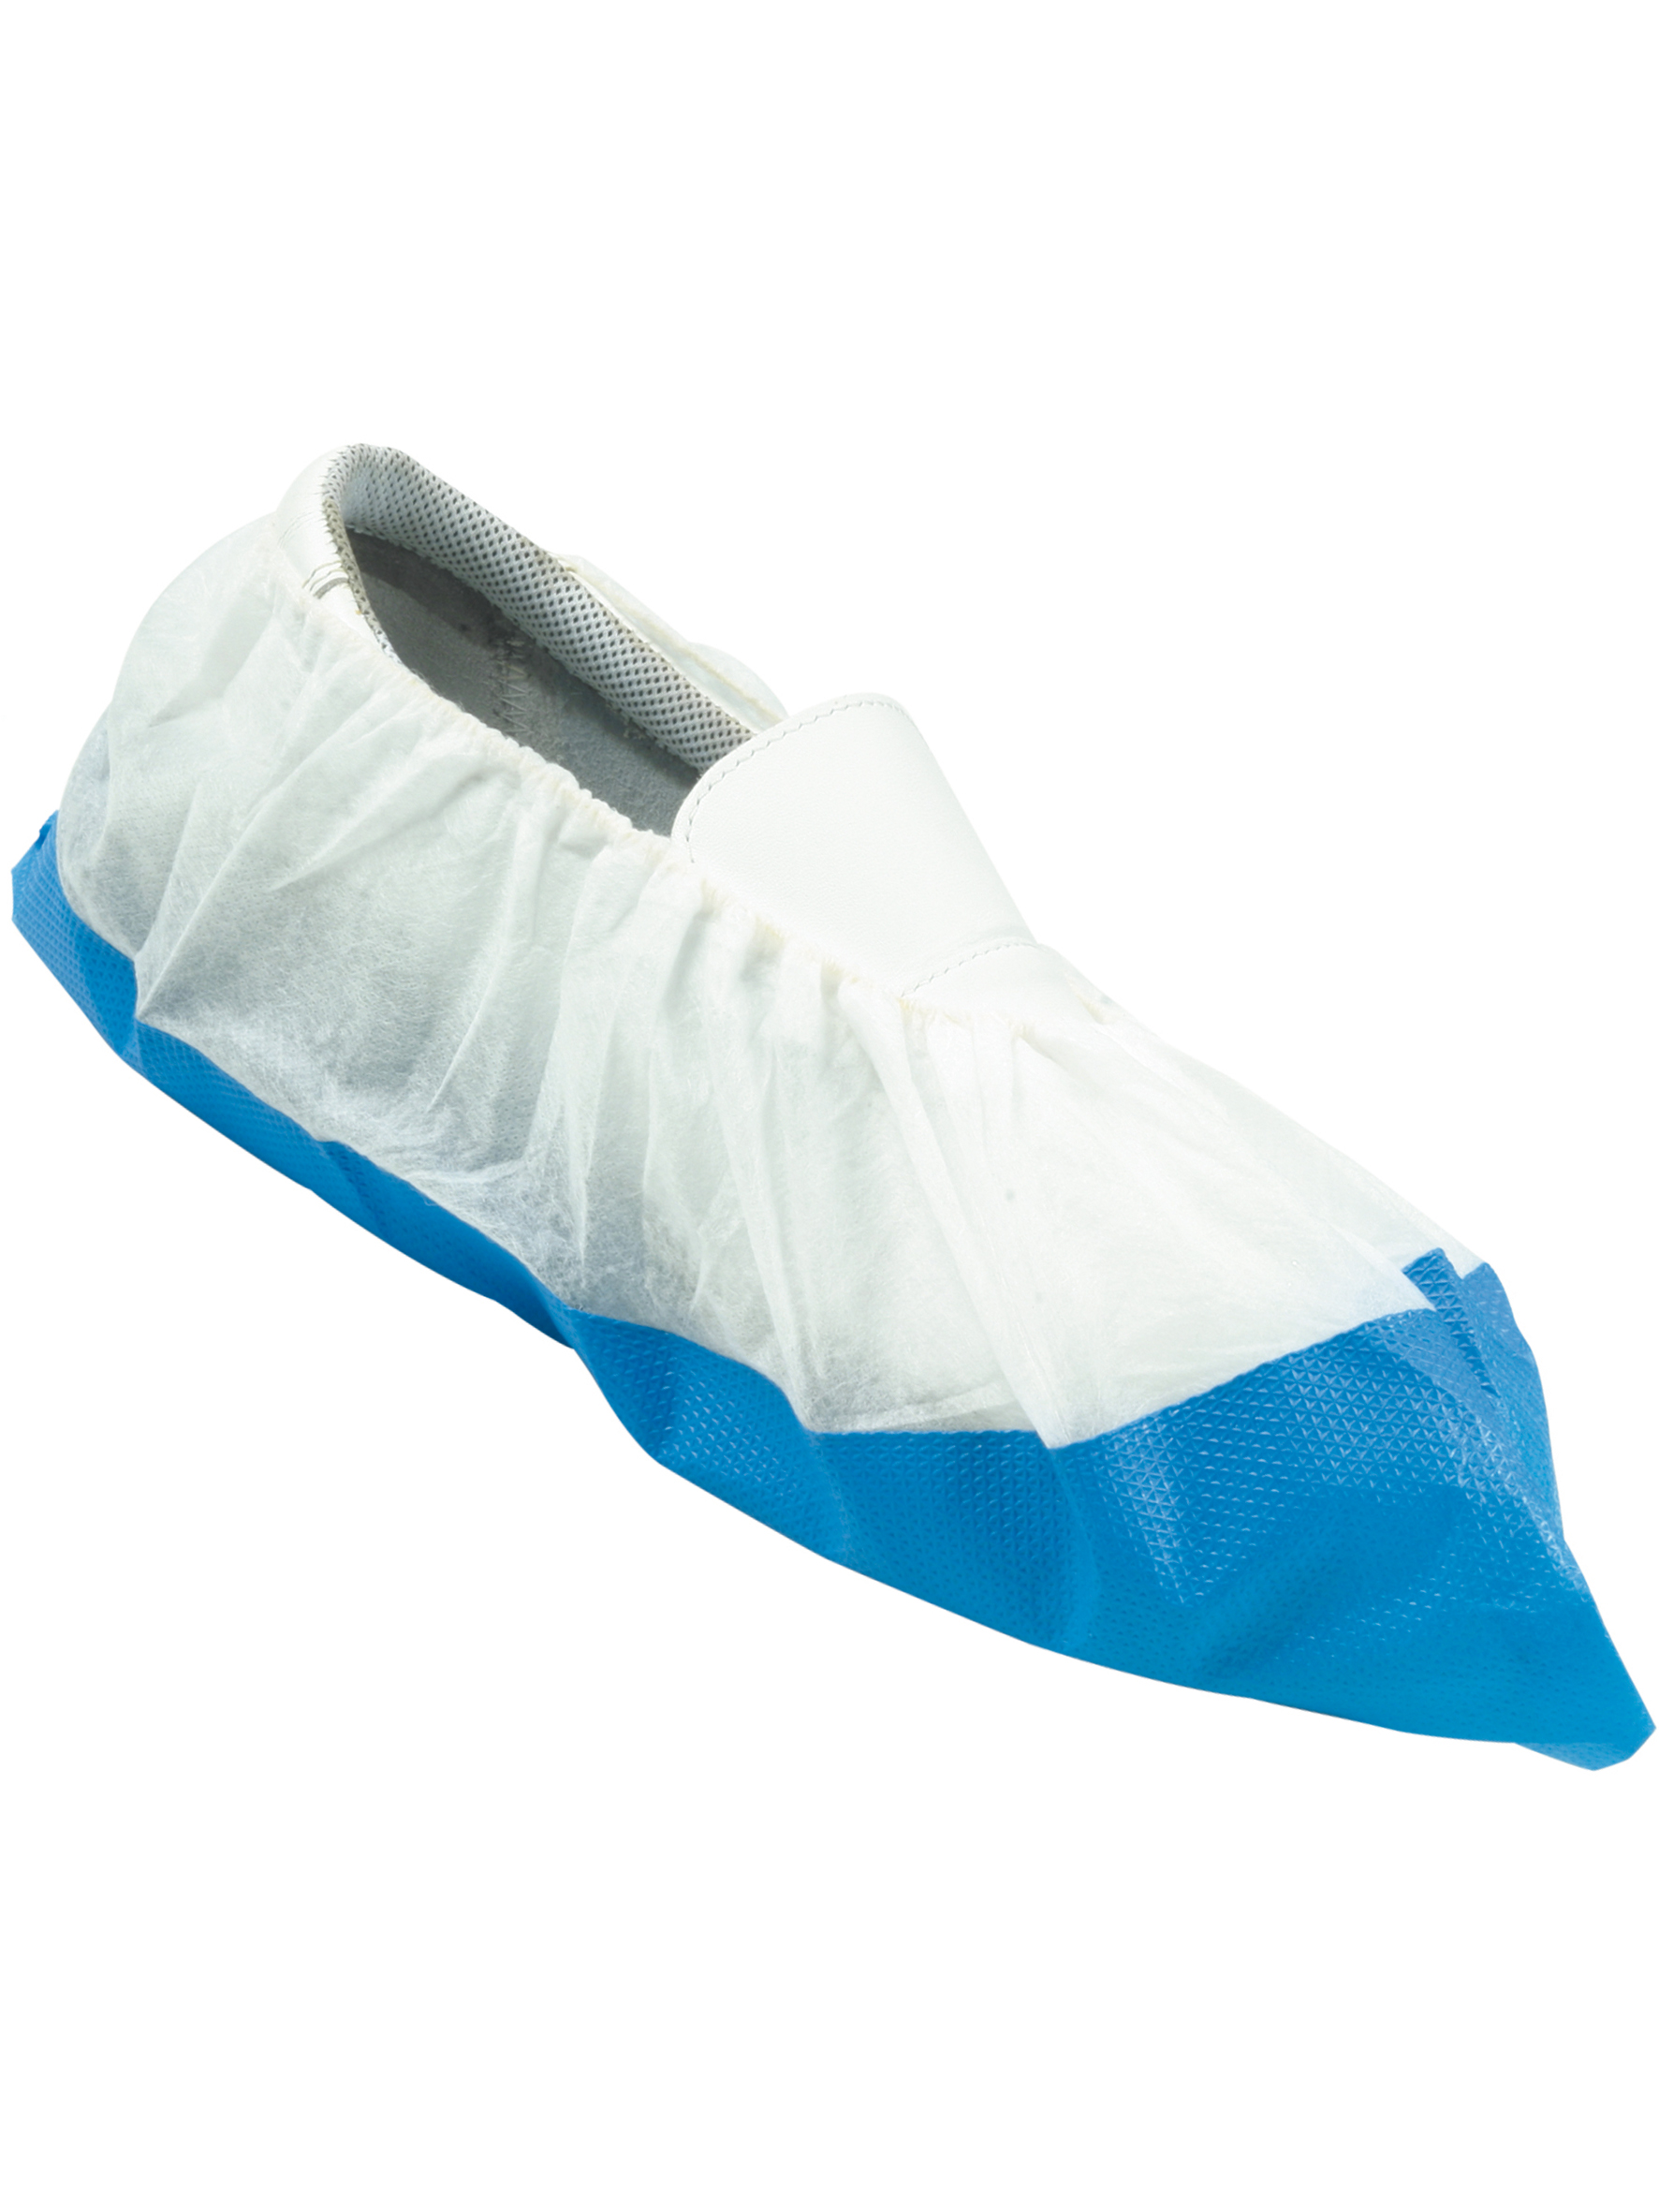 Überschuhe weißblau Polyethylen 50 Stück mit Gummizug und verstärkter Sohle